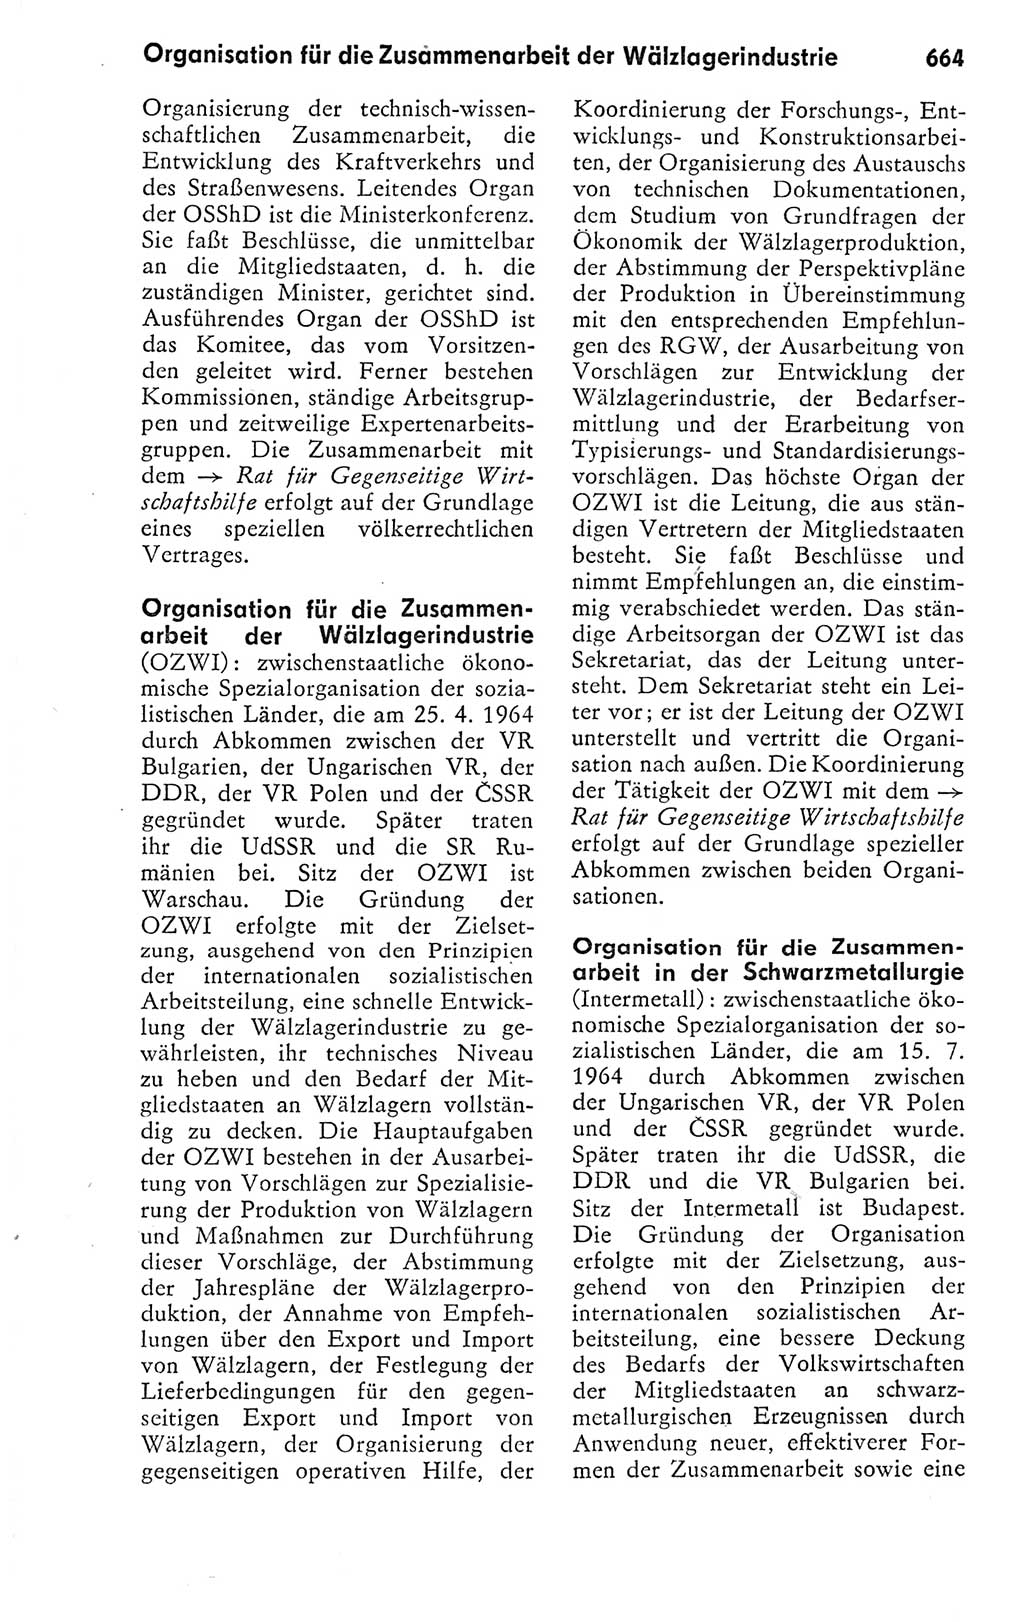 Kleines politisches Wörterbuch [Deutsche Demokratische Republik (DDR)] 1978, Seite 664 (Kl. pol. Wb. DDR 1978, S. 664)